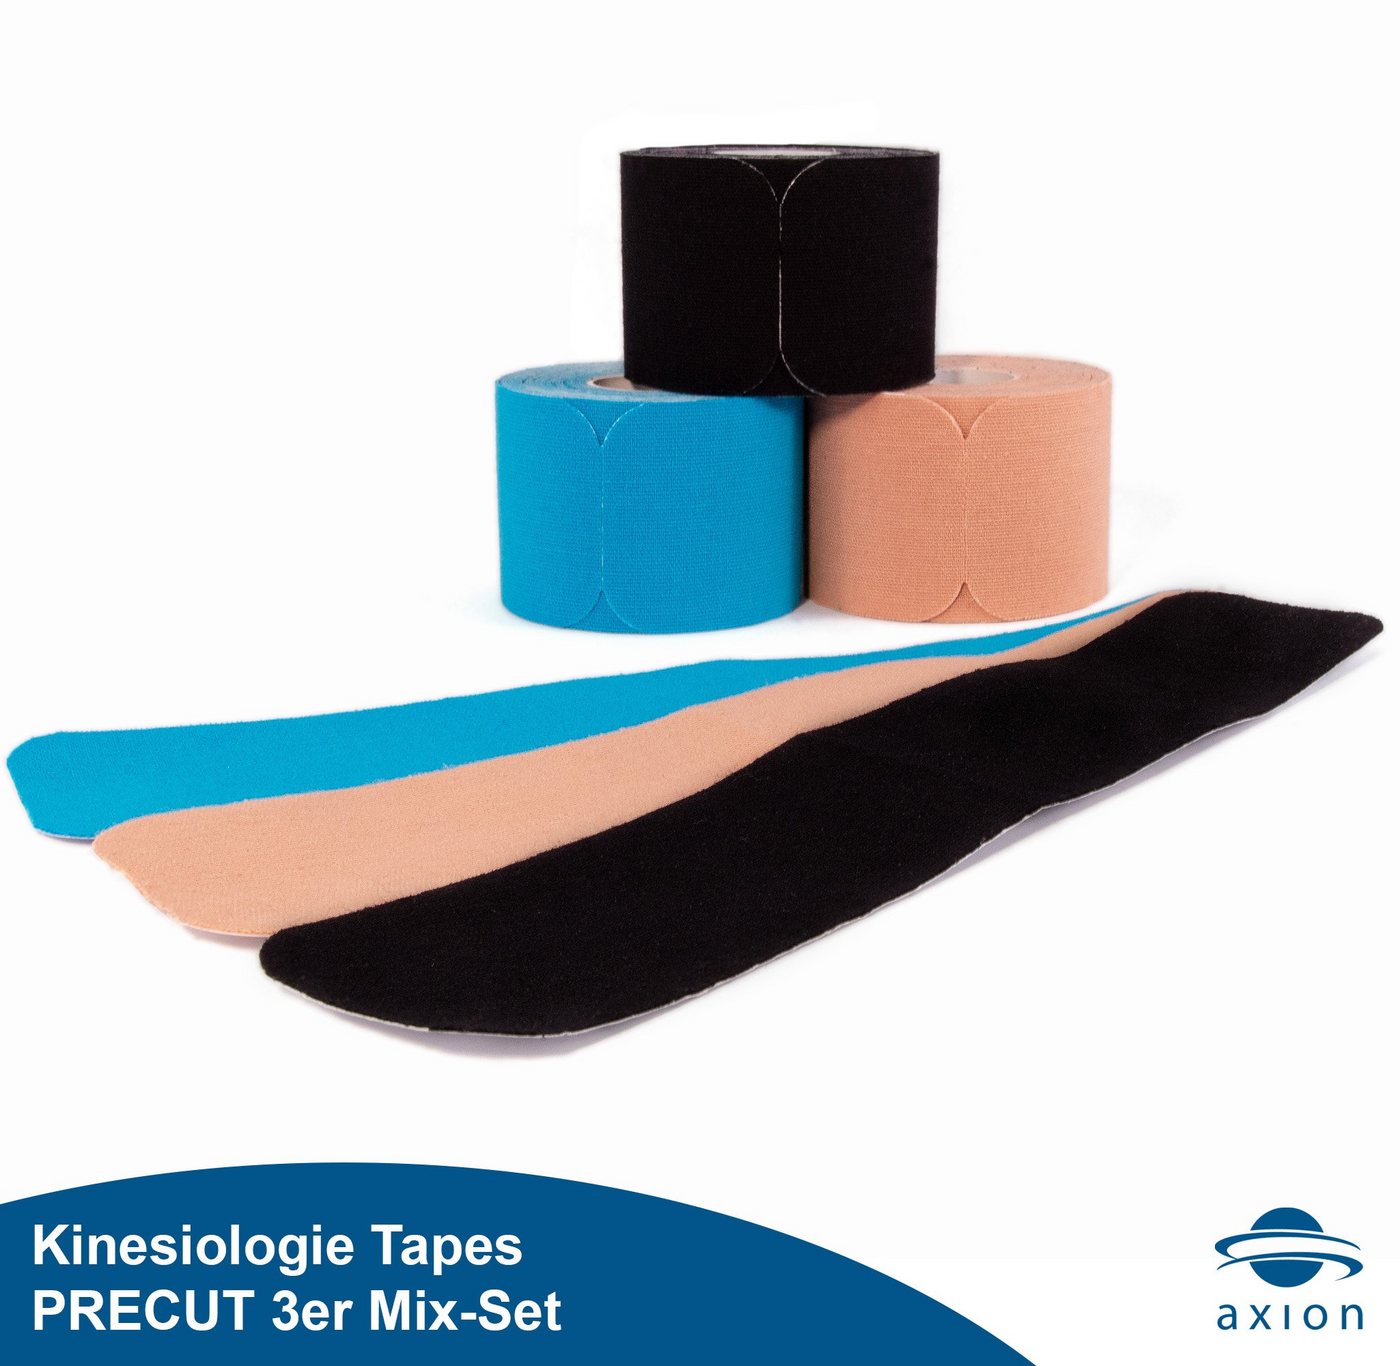 Axion Kinesiologie-Tape PRECUT 3er Mix-Set, je 20 Stück, 25 x 5 cm - schwarz, blau, beige (Set, 3-St) wasserfest • hautfreundlich • elastisch, selbstklebend • Physio-Tape von Axion